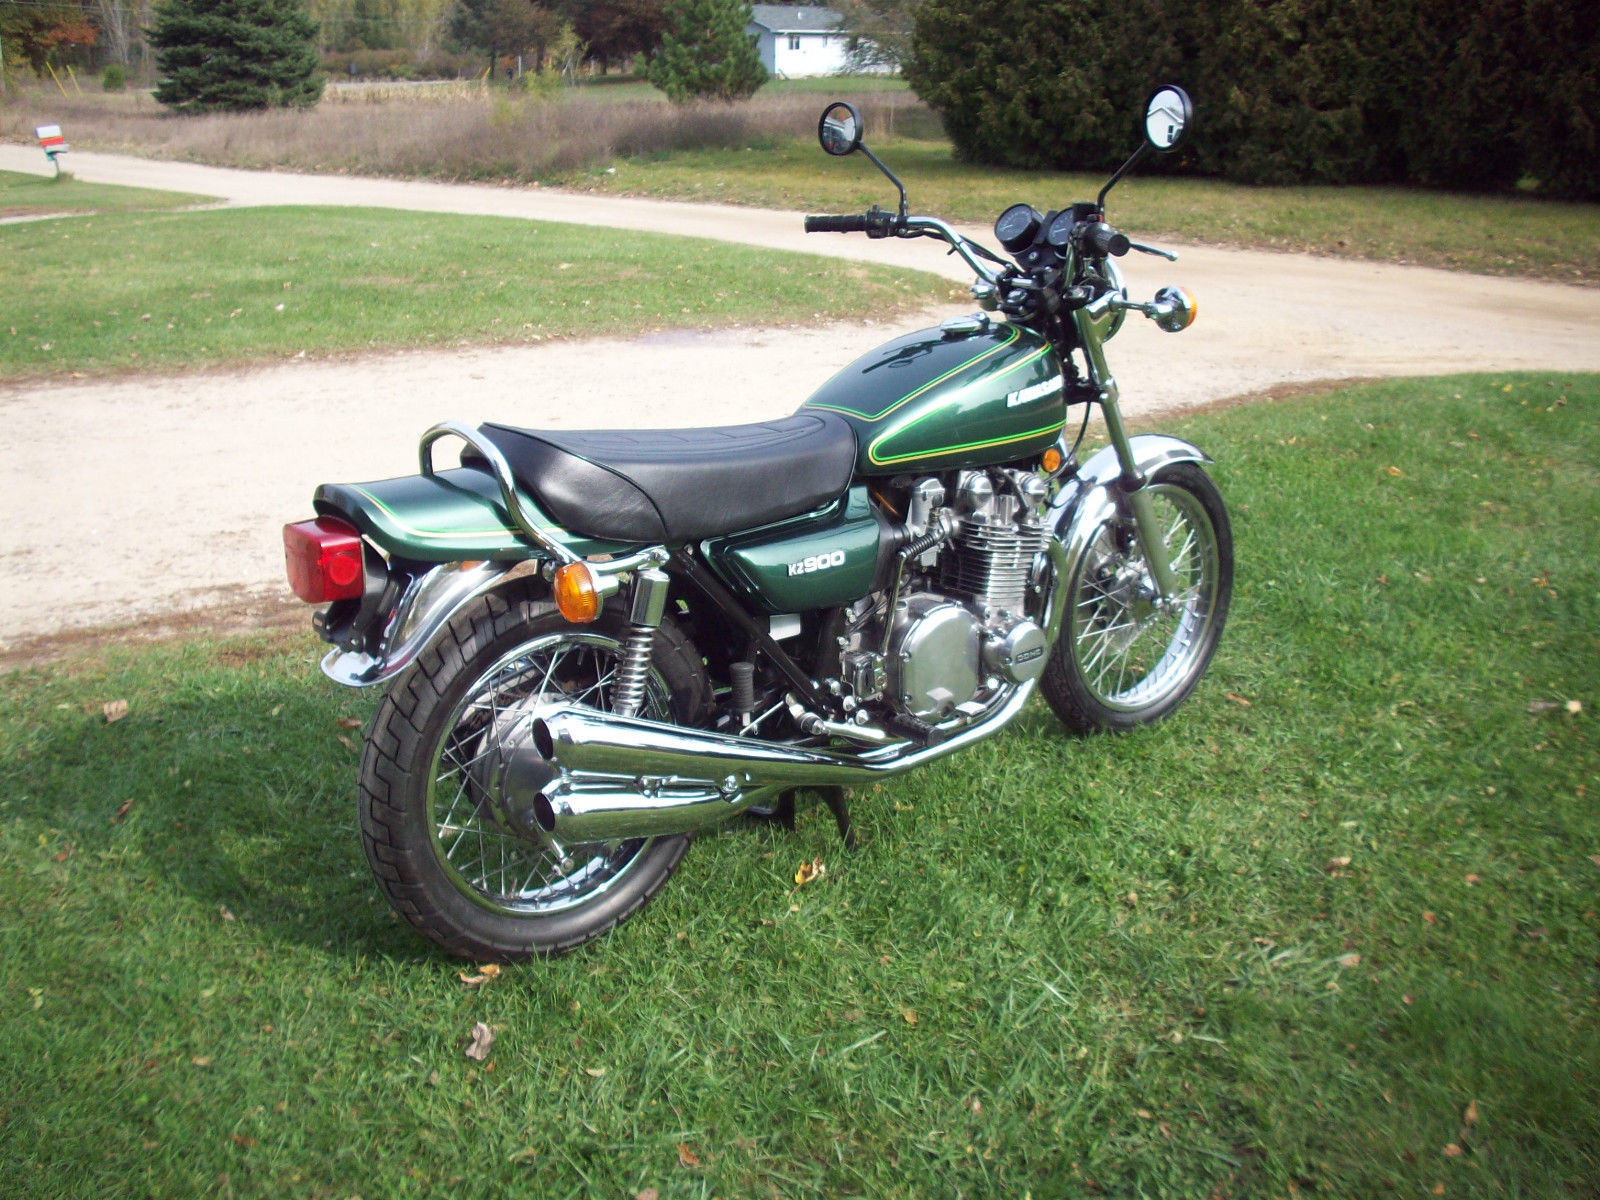 Kawasaki KZ900 - 1976